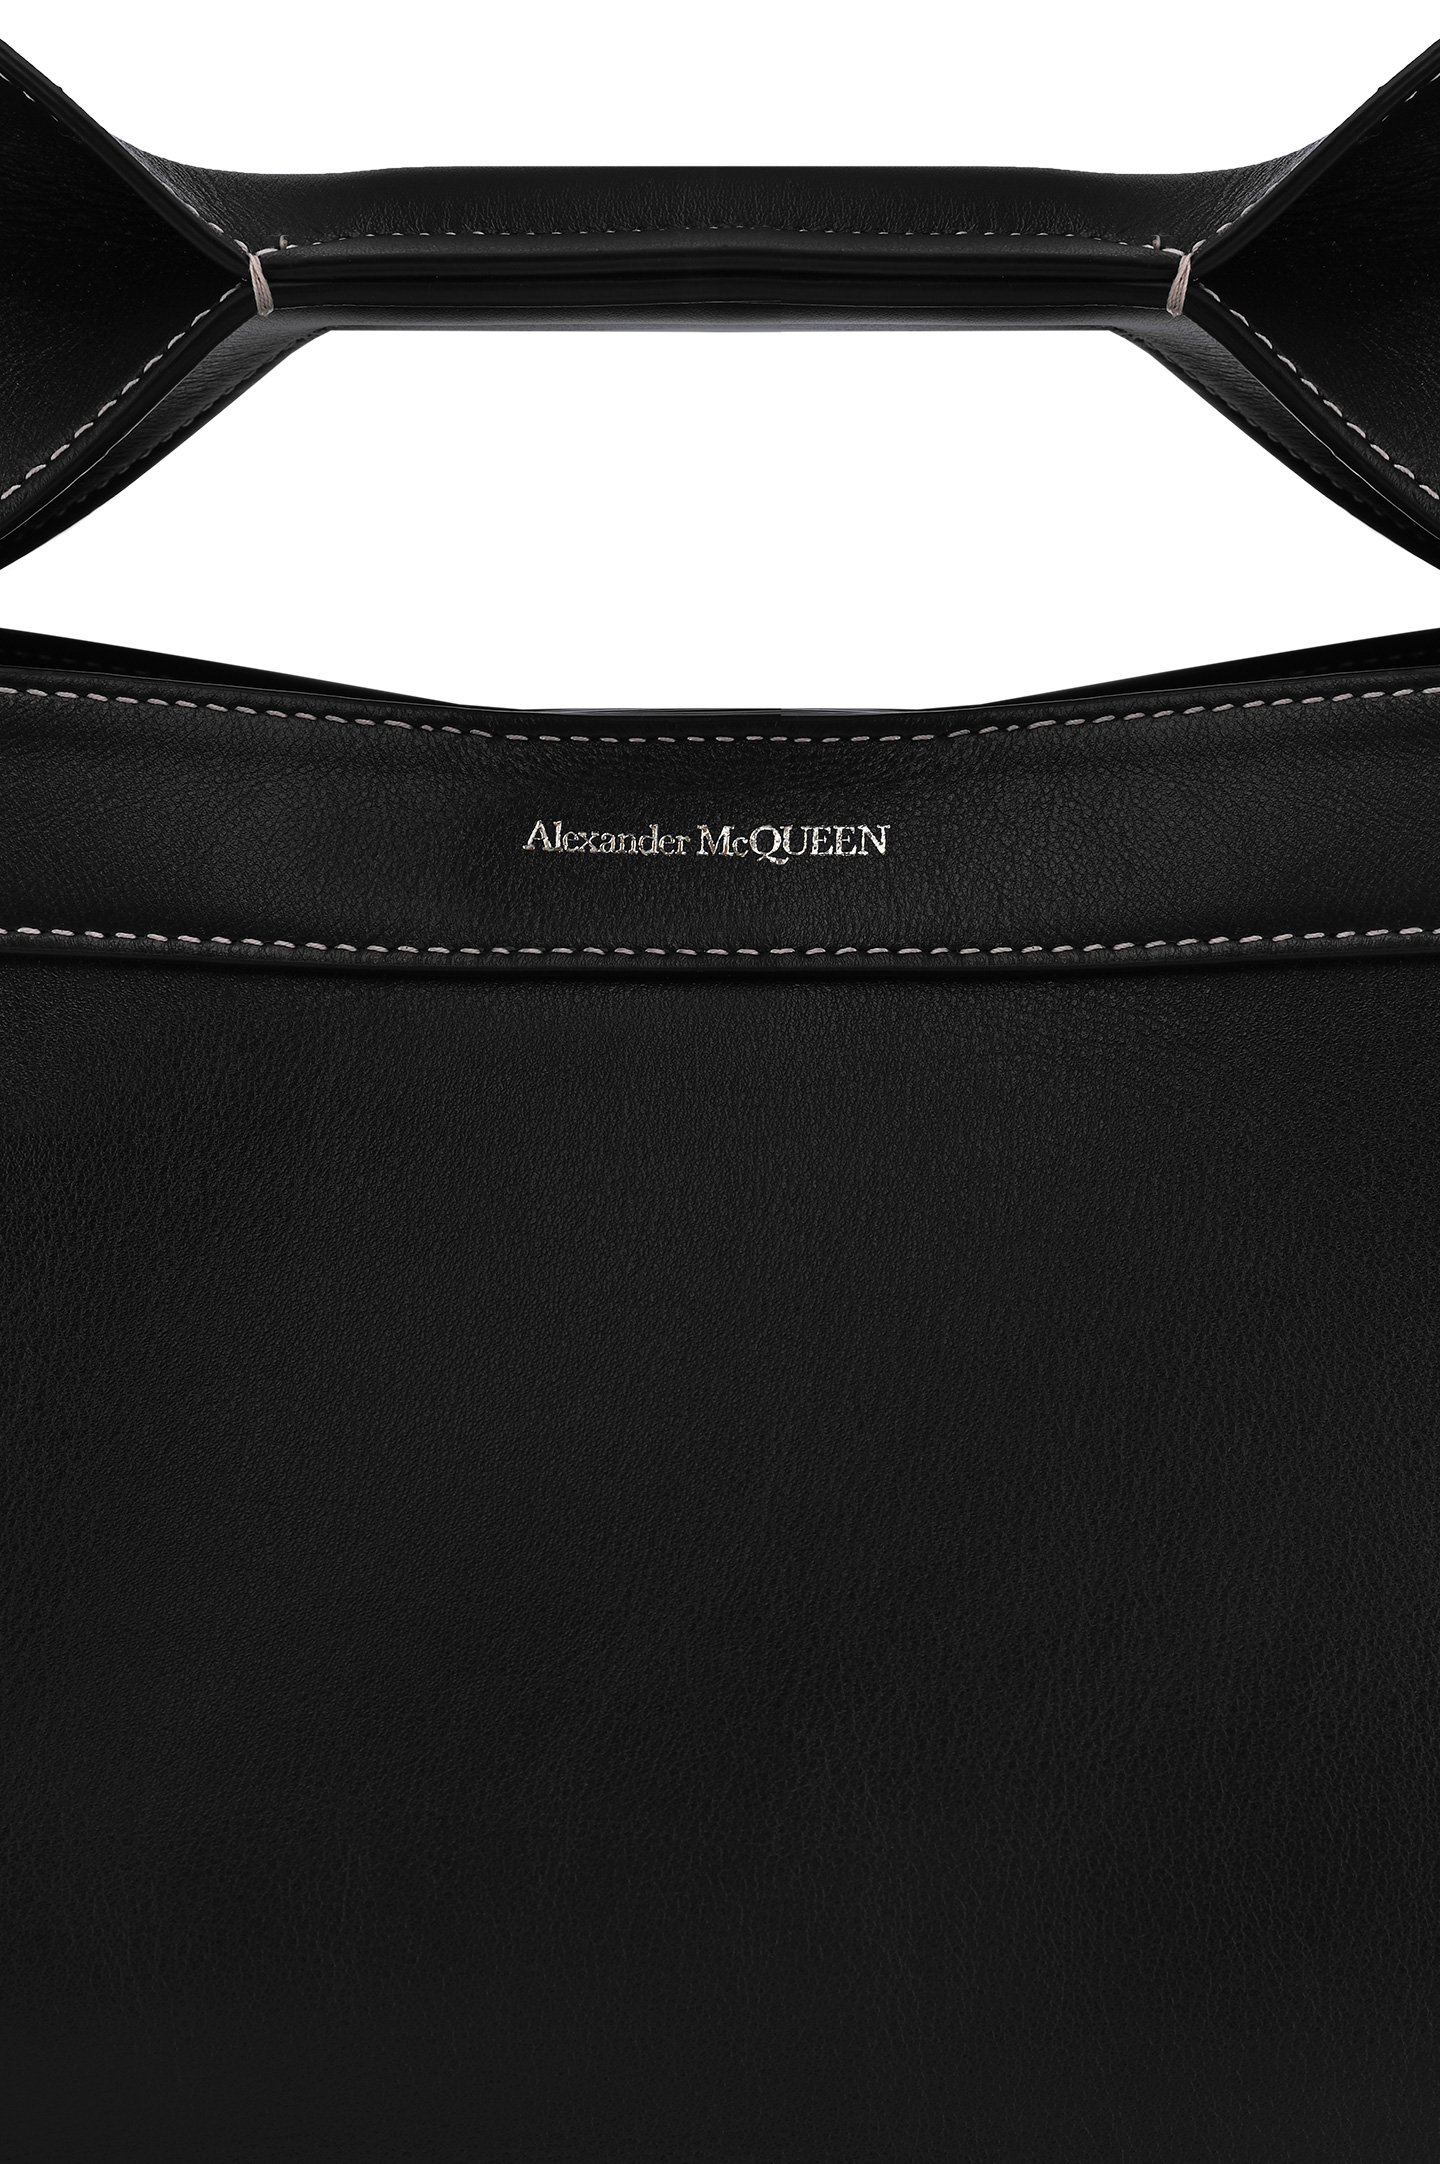 Кожаная сумка с кошельком ALEXANDER MCQUEEN 47095661BLCA, цвет: Черный, Женский